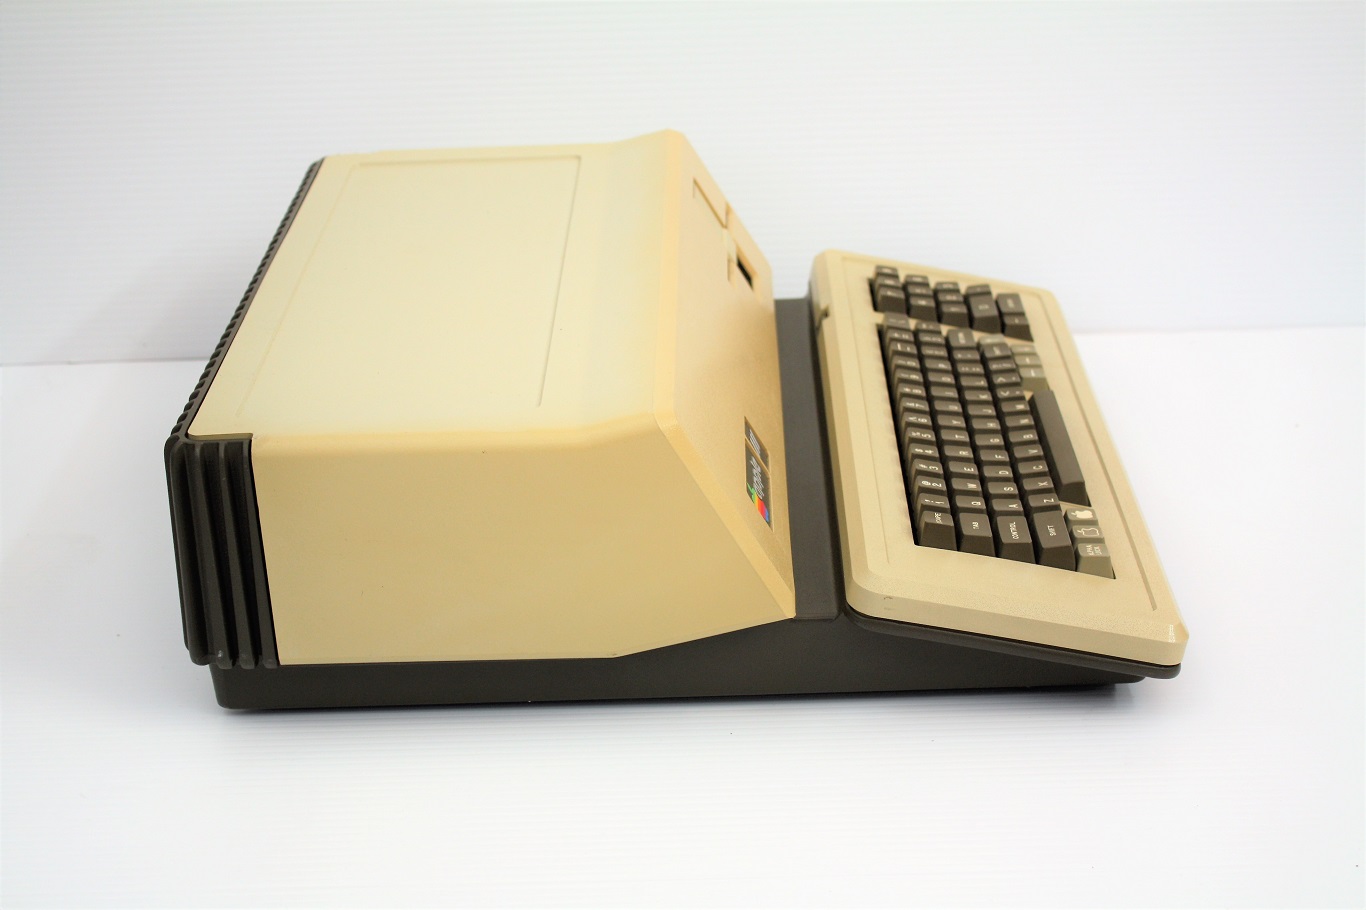 Apple III - Computer side